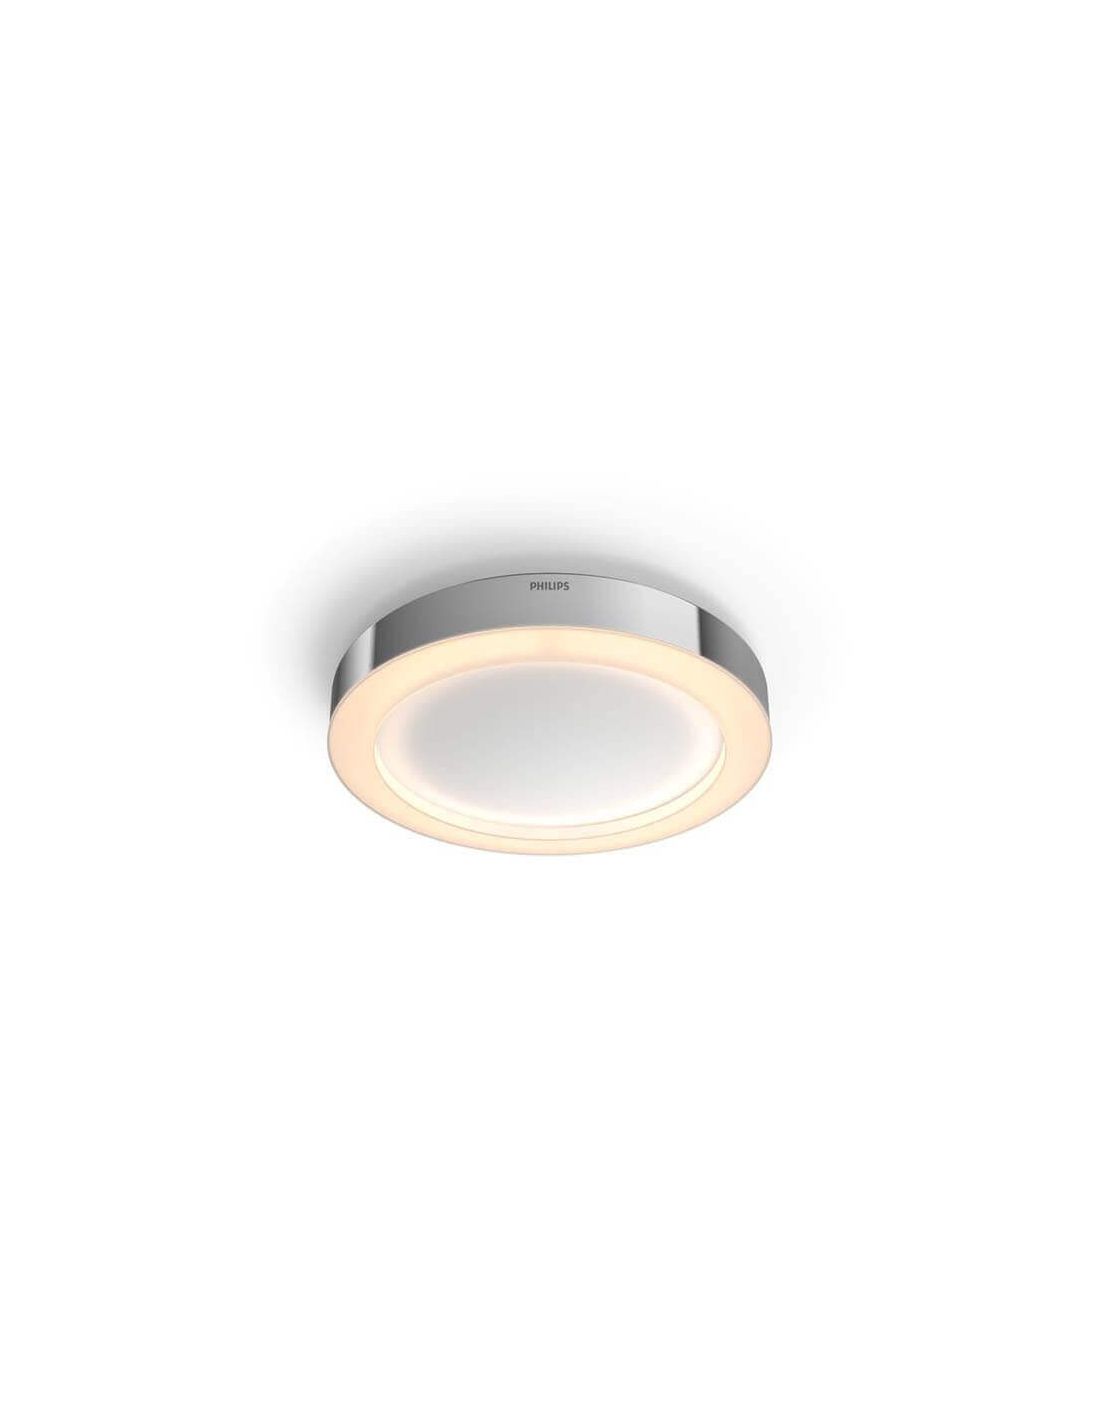 Philips Lighting Hue Plafonnier de salle de bain LED 4116531P6 Devere LED  intégrée 19.2 W de blanc chaud à blanc froid - Conrad Electronic France